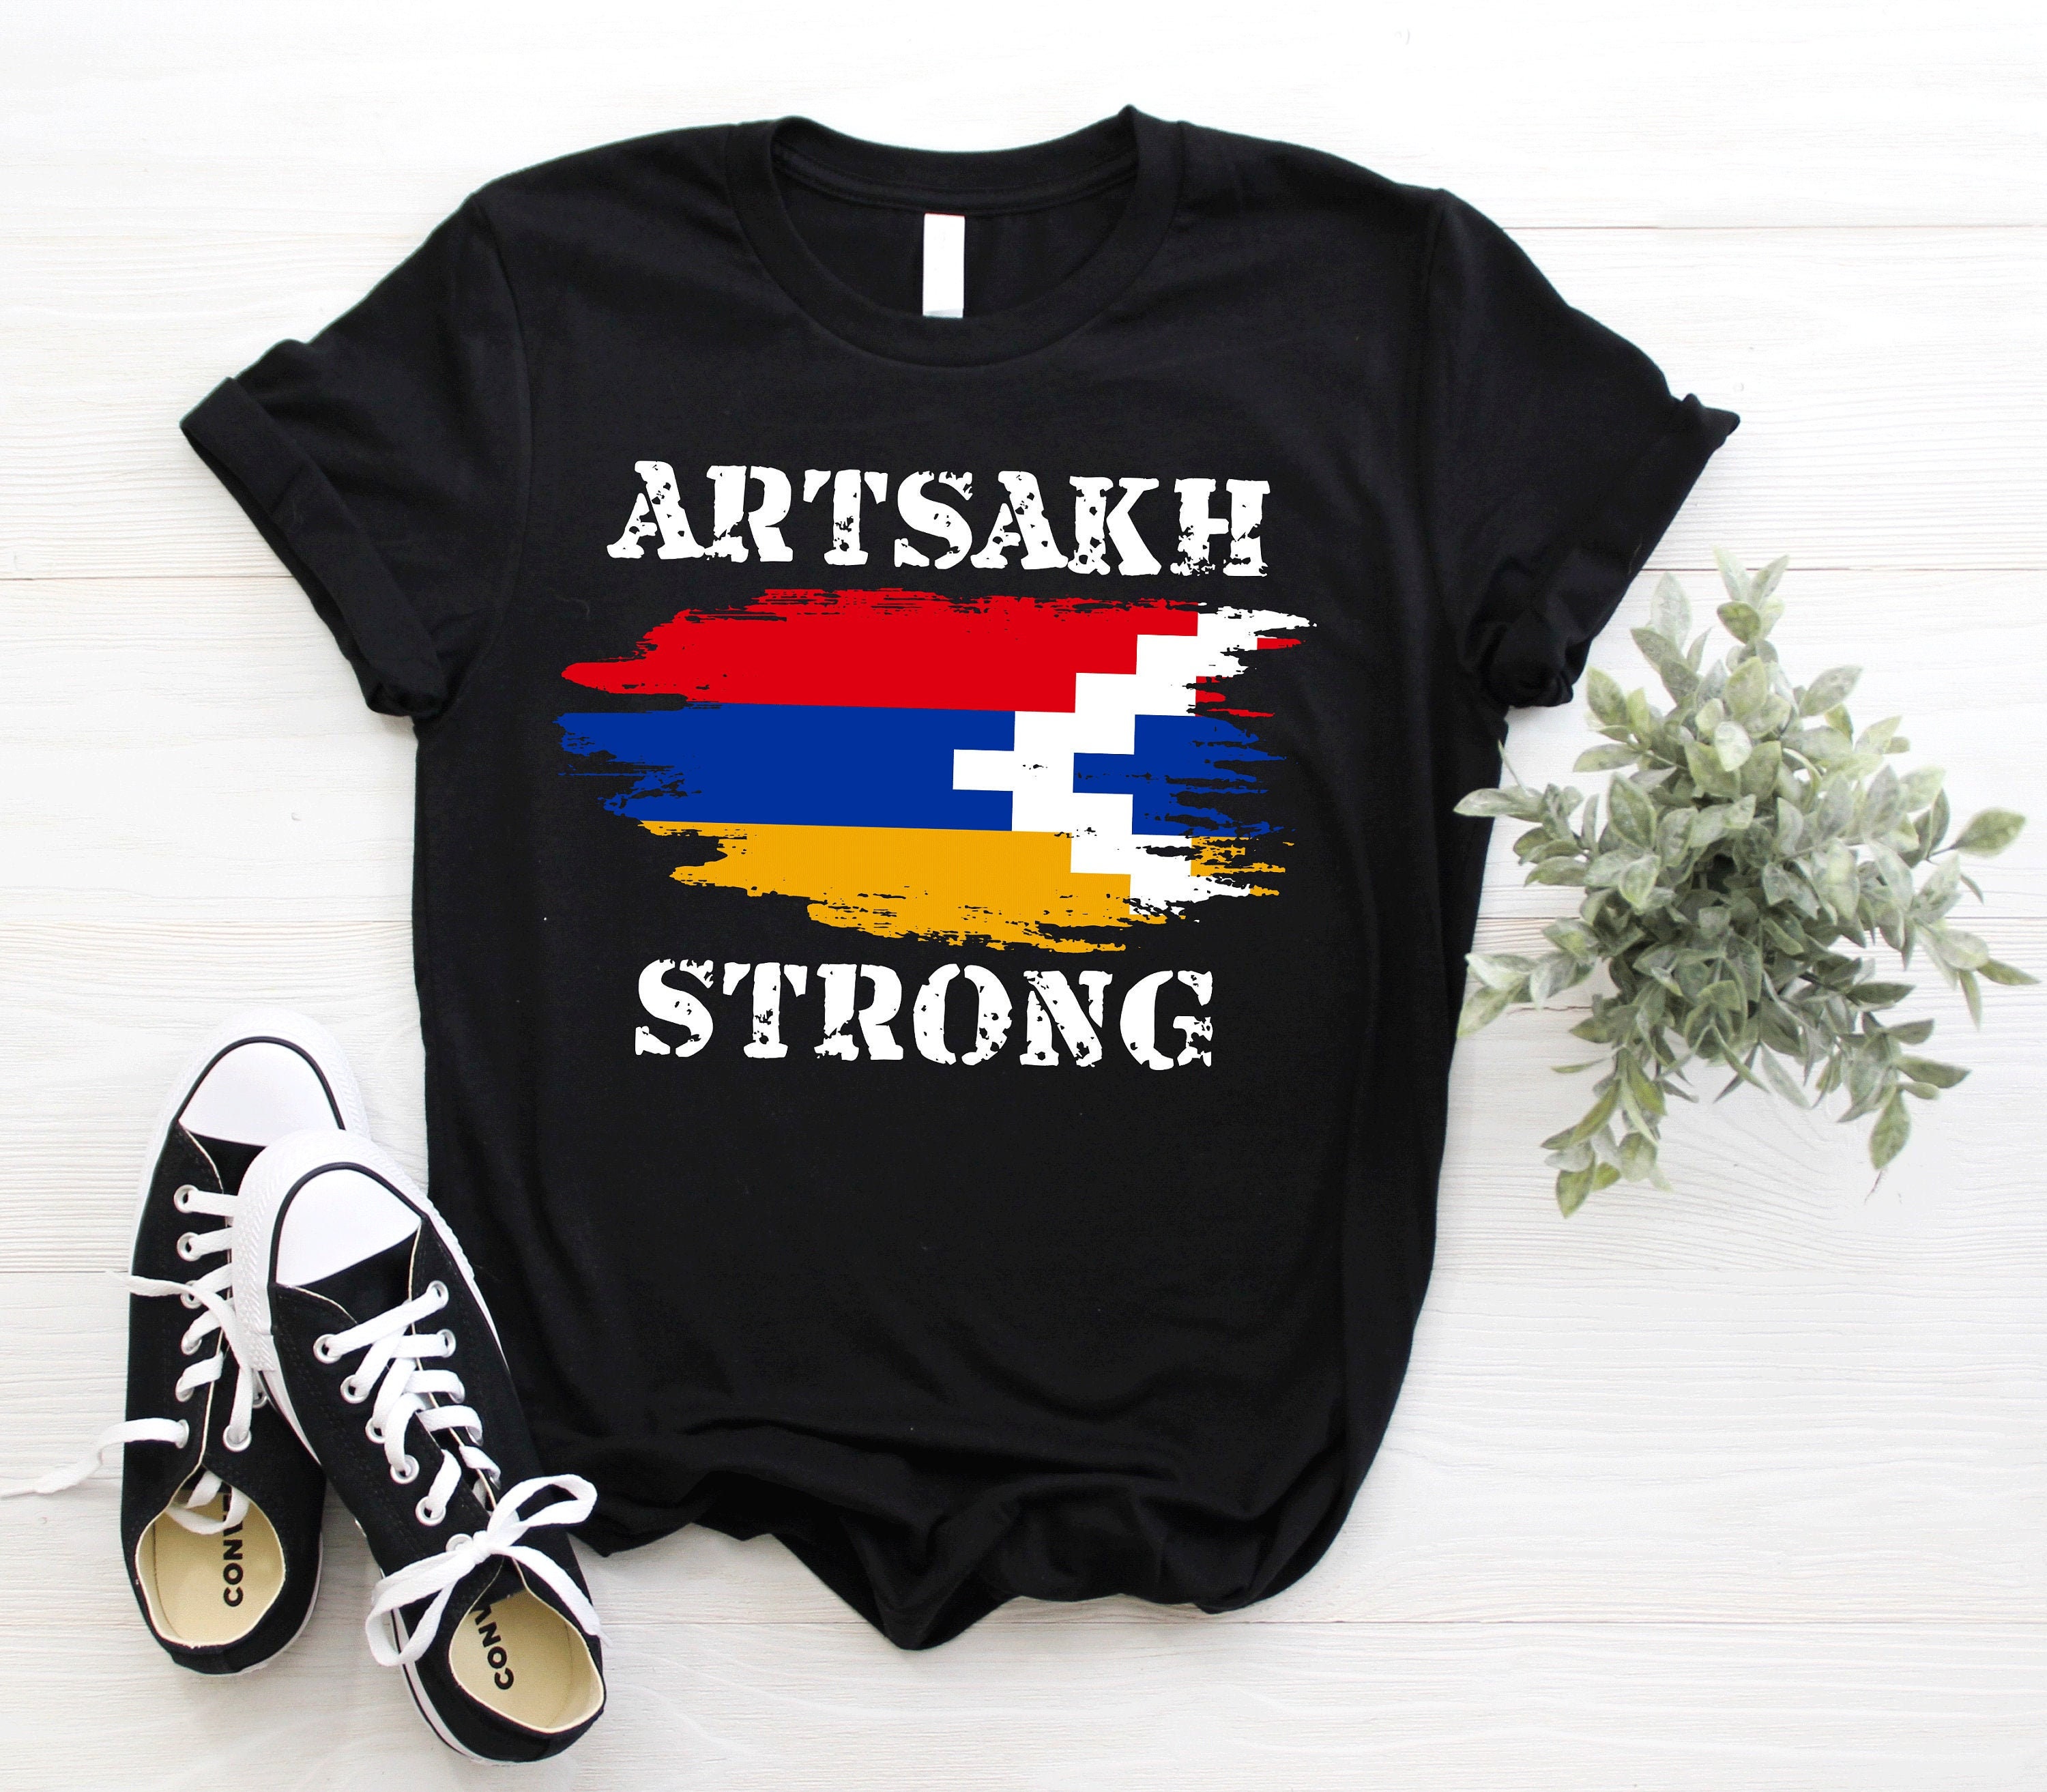 Armenia Artsakh Strong Childrens Kids T-shirt